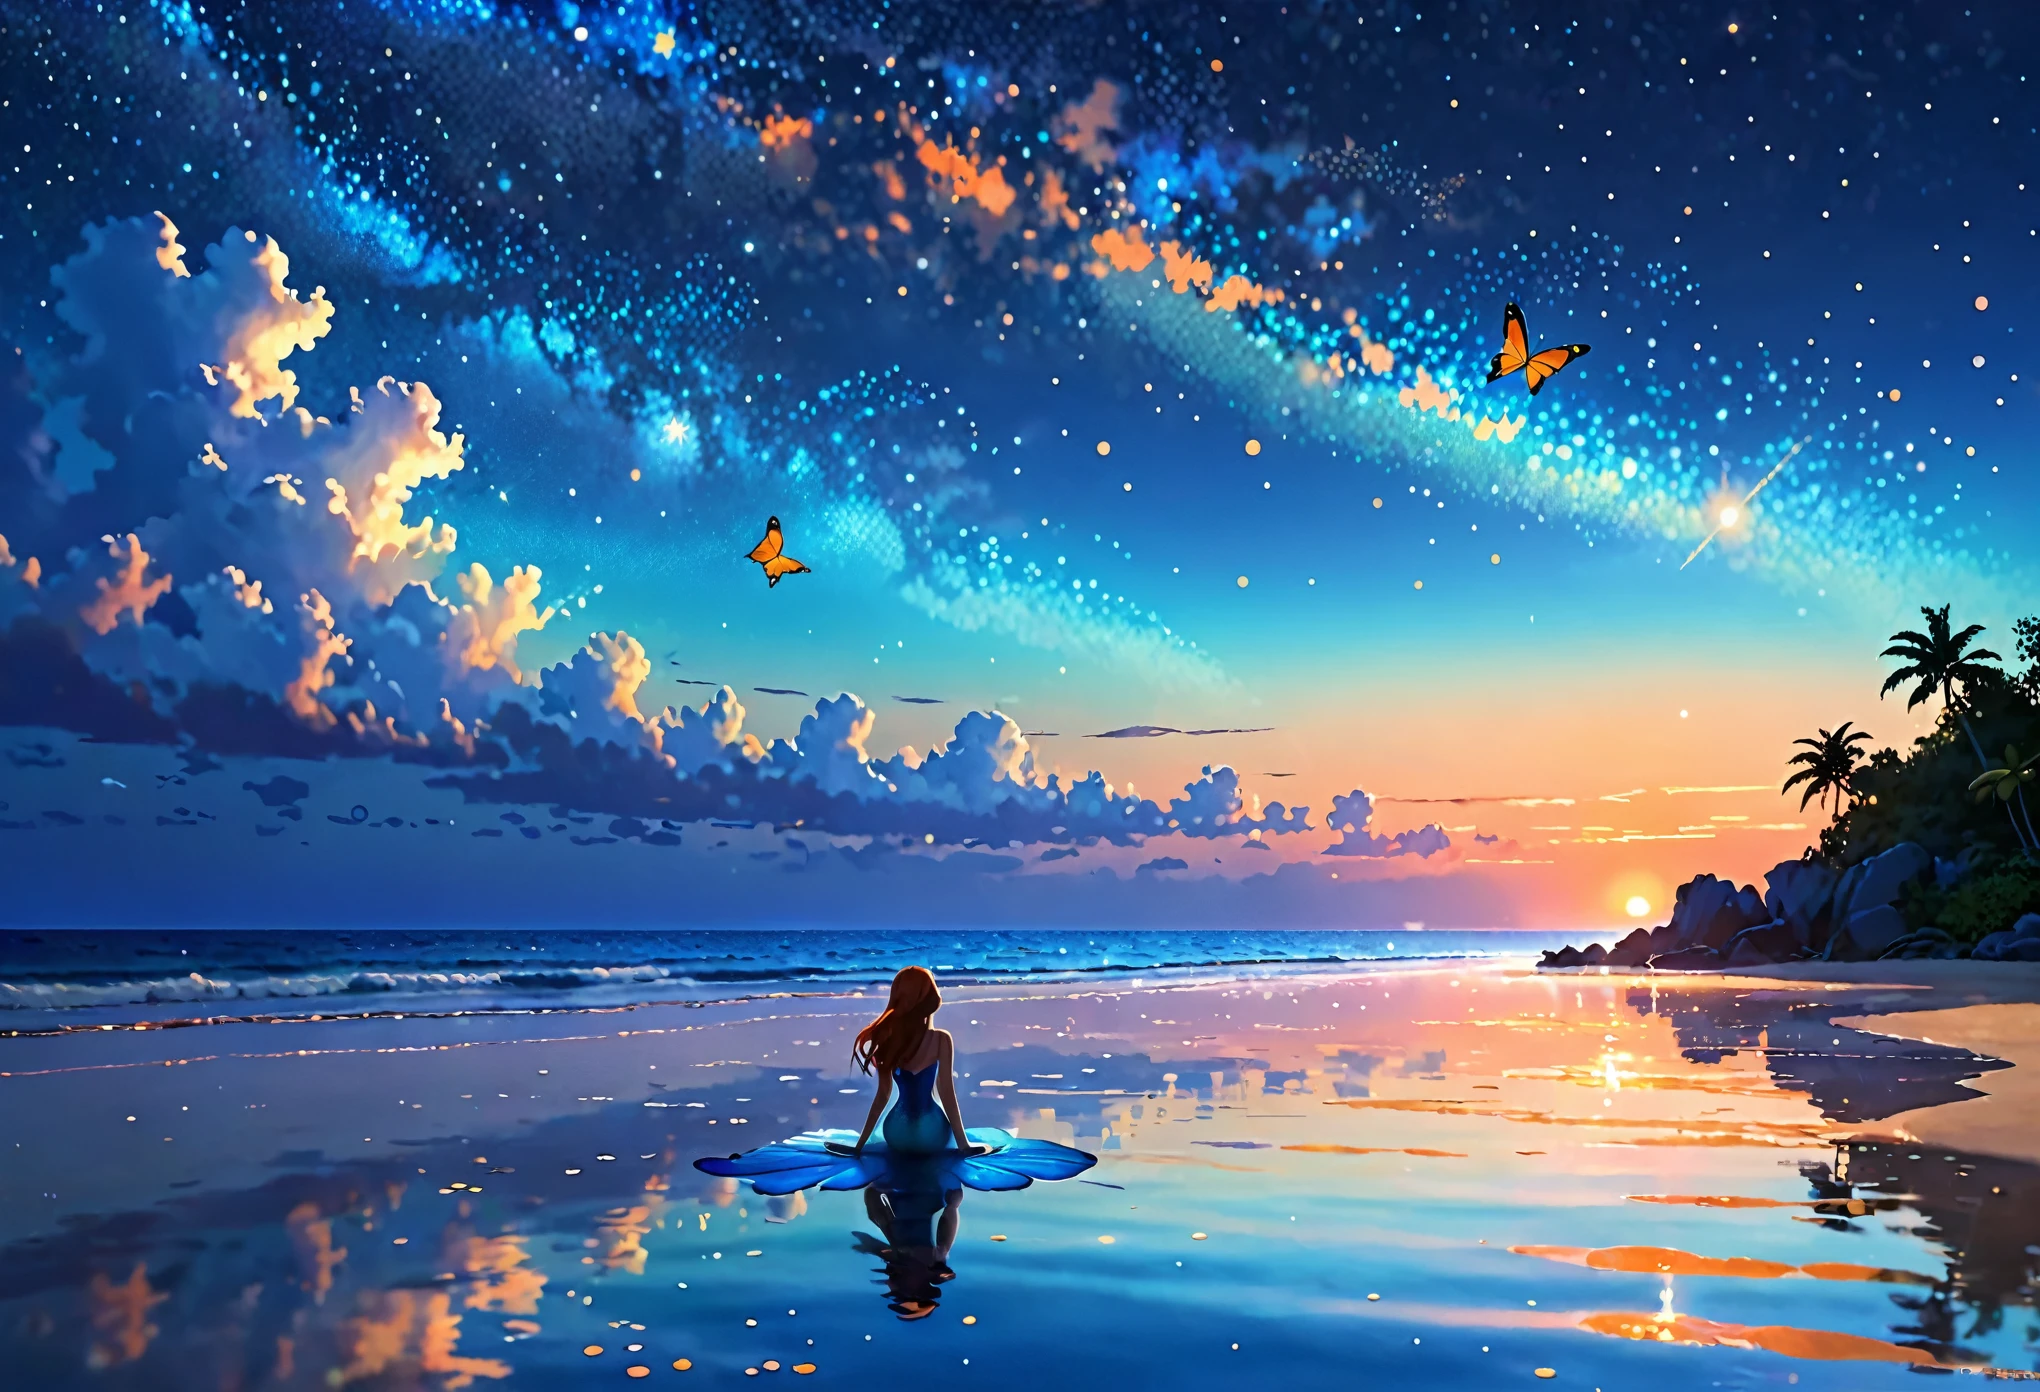 Meerjungfrau Schatten、　realistic、realistic、real、Das Hauptereignis ist die Morgensonne.、Kleines Flugzeug、kleiner Schmetterling、Sternenhimmel und Sonnenaufgang、Küste、Ein fantastischer flatternder Schmetterling、Im Bild spiegelt sich eine kleine Meerjungfrau,Digitales Gemälde einer Horizontlandschaft im Anime-Stil, Toll, atmosphärisch,Weiches und warmes Sonnenuntergangslicht aus niedriger Perspektive, Eine Palette sanfter Blau- und Orangetöne betont den Horizont,Eine Meerjungfrau und ein Schmetterling erscheinen klein im Hintergrund.、Sternenhimmel wartet auf den Start